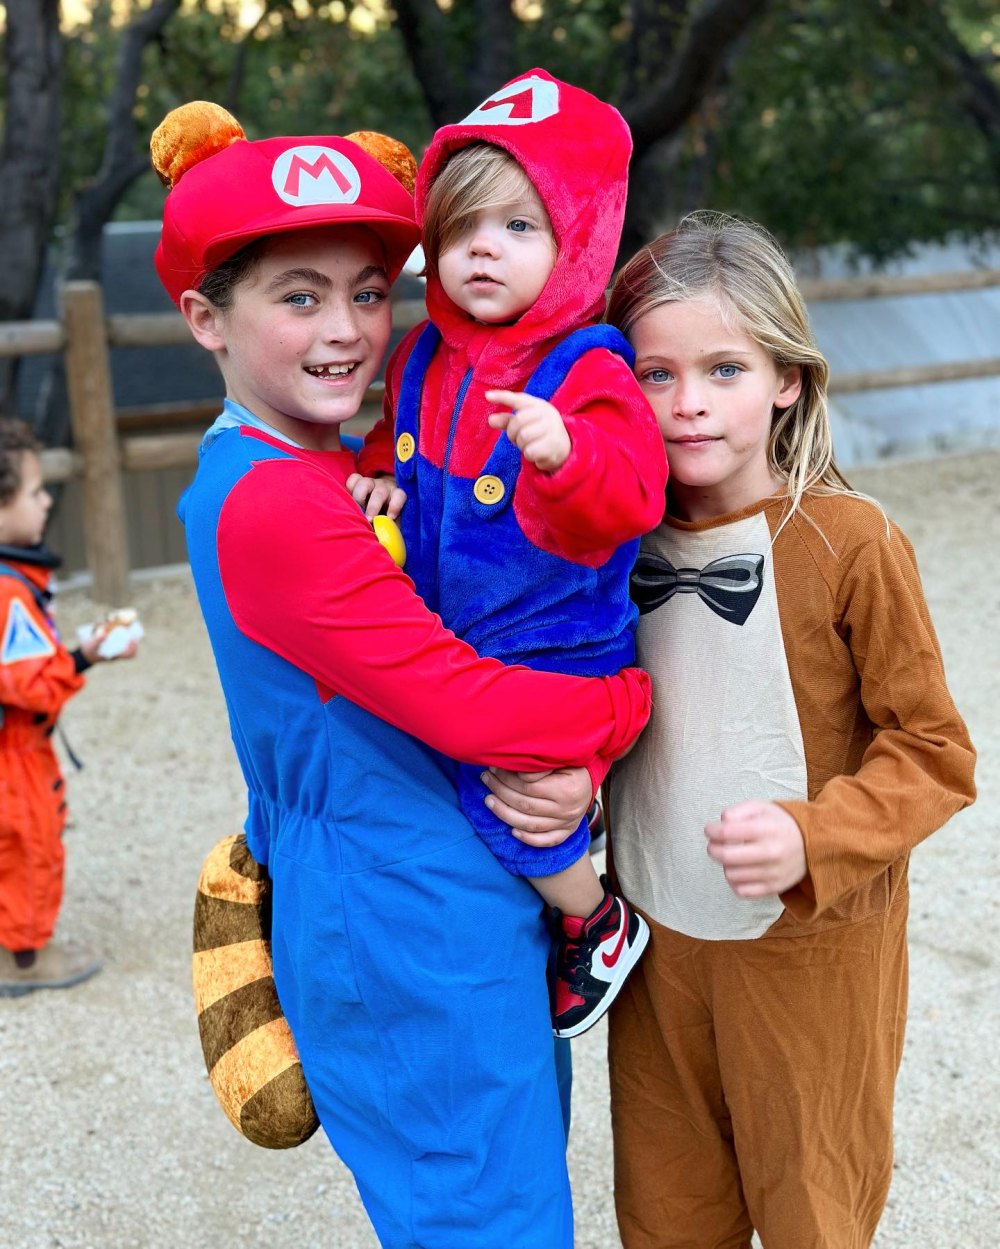 Brian Austin Greens Söhne Zane und Bodhi passen in Super Mario-Kostümen zusammen